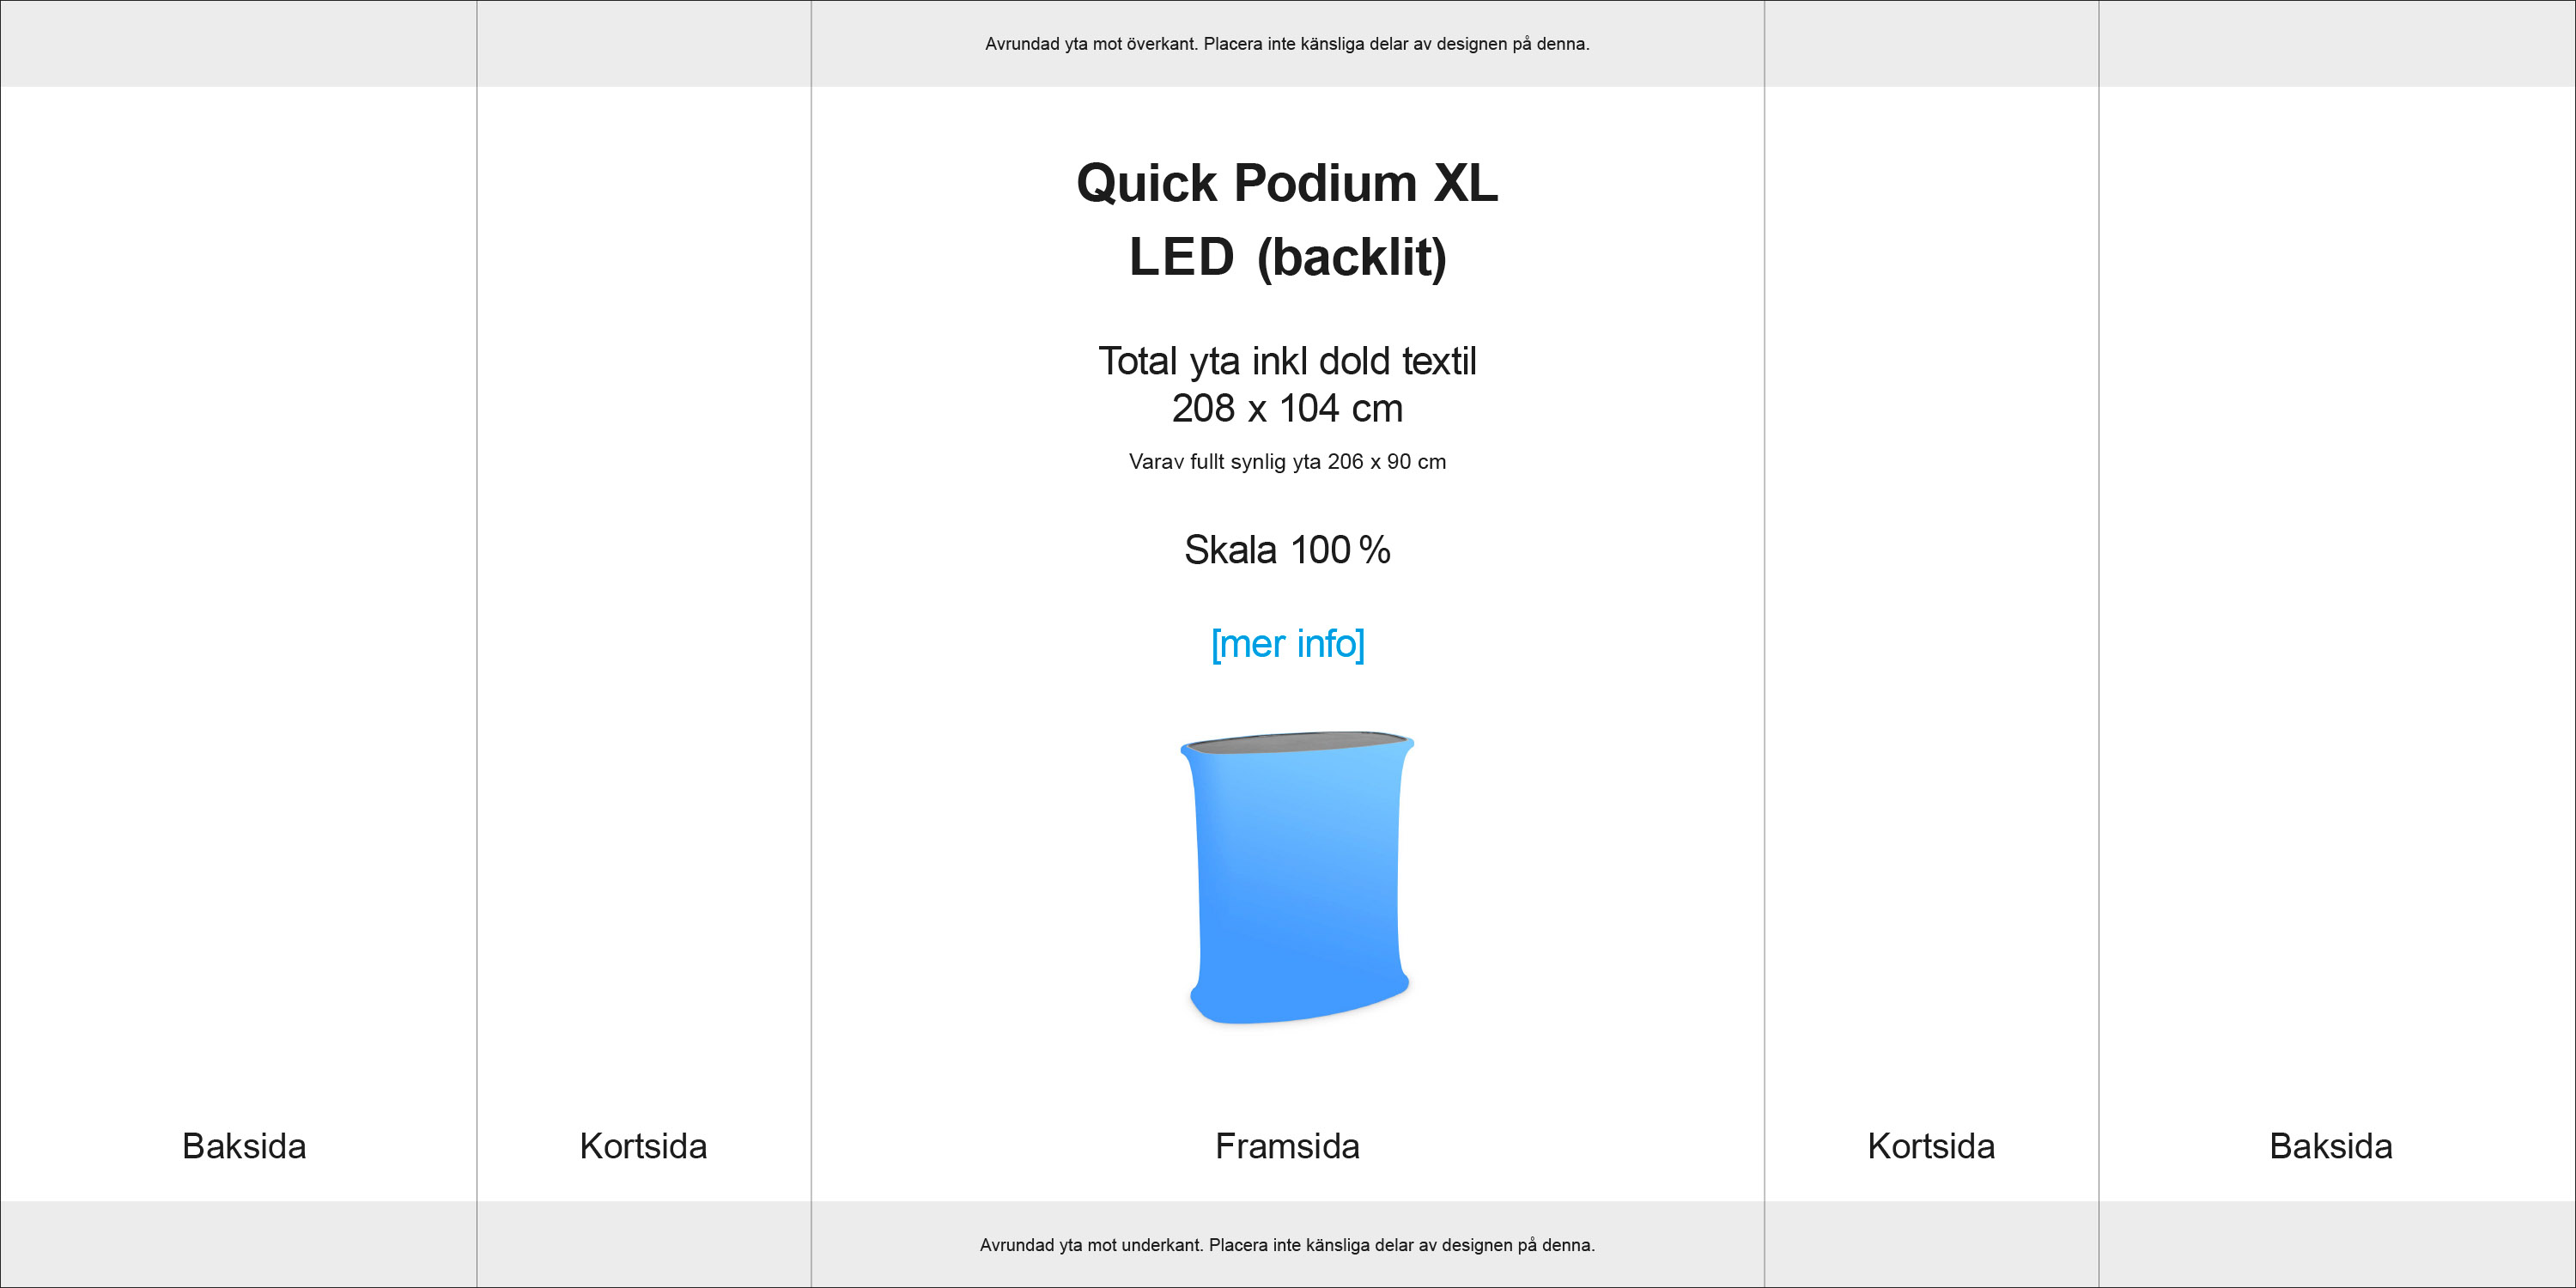 Quick Podium XL LED originalmall